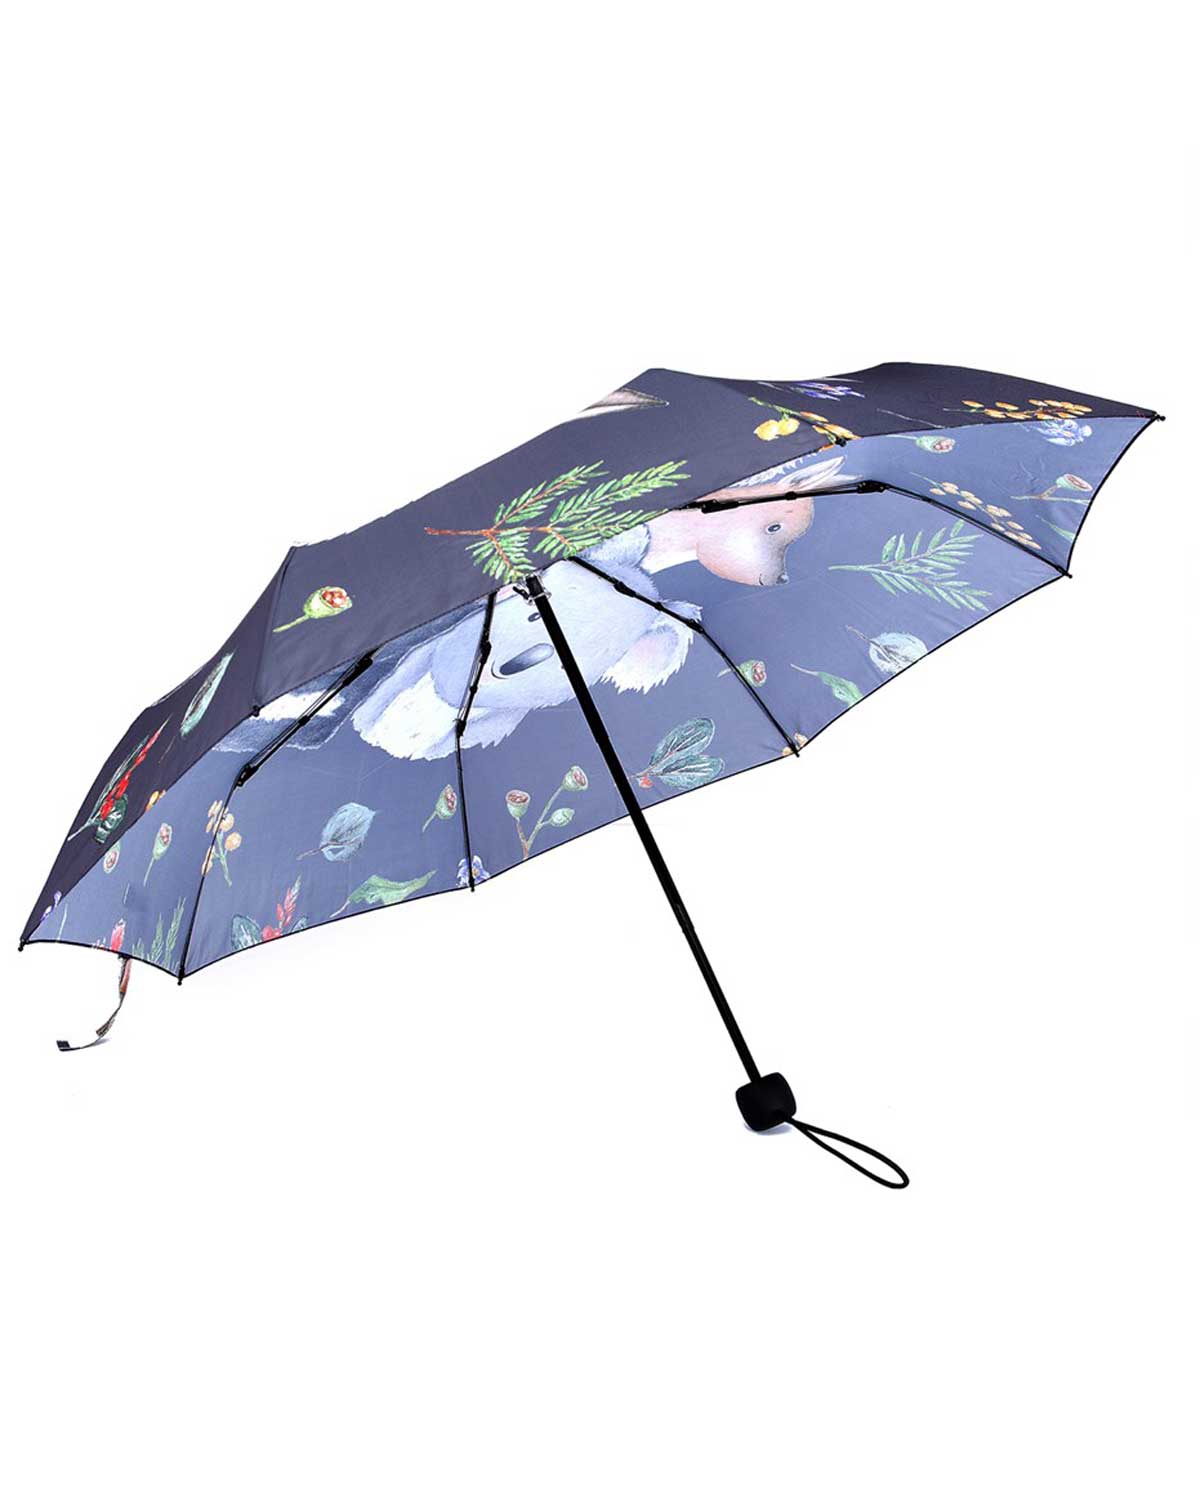 Gumnut Pals Umbrella